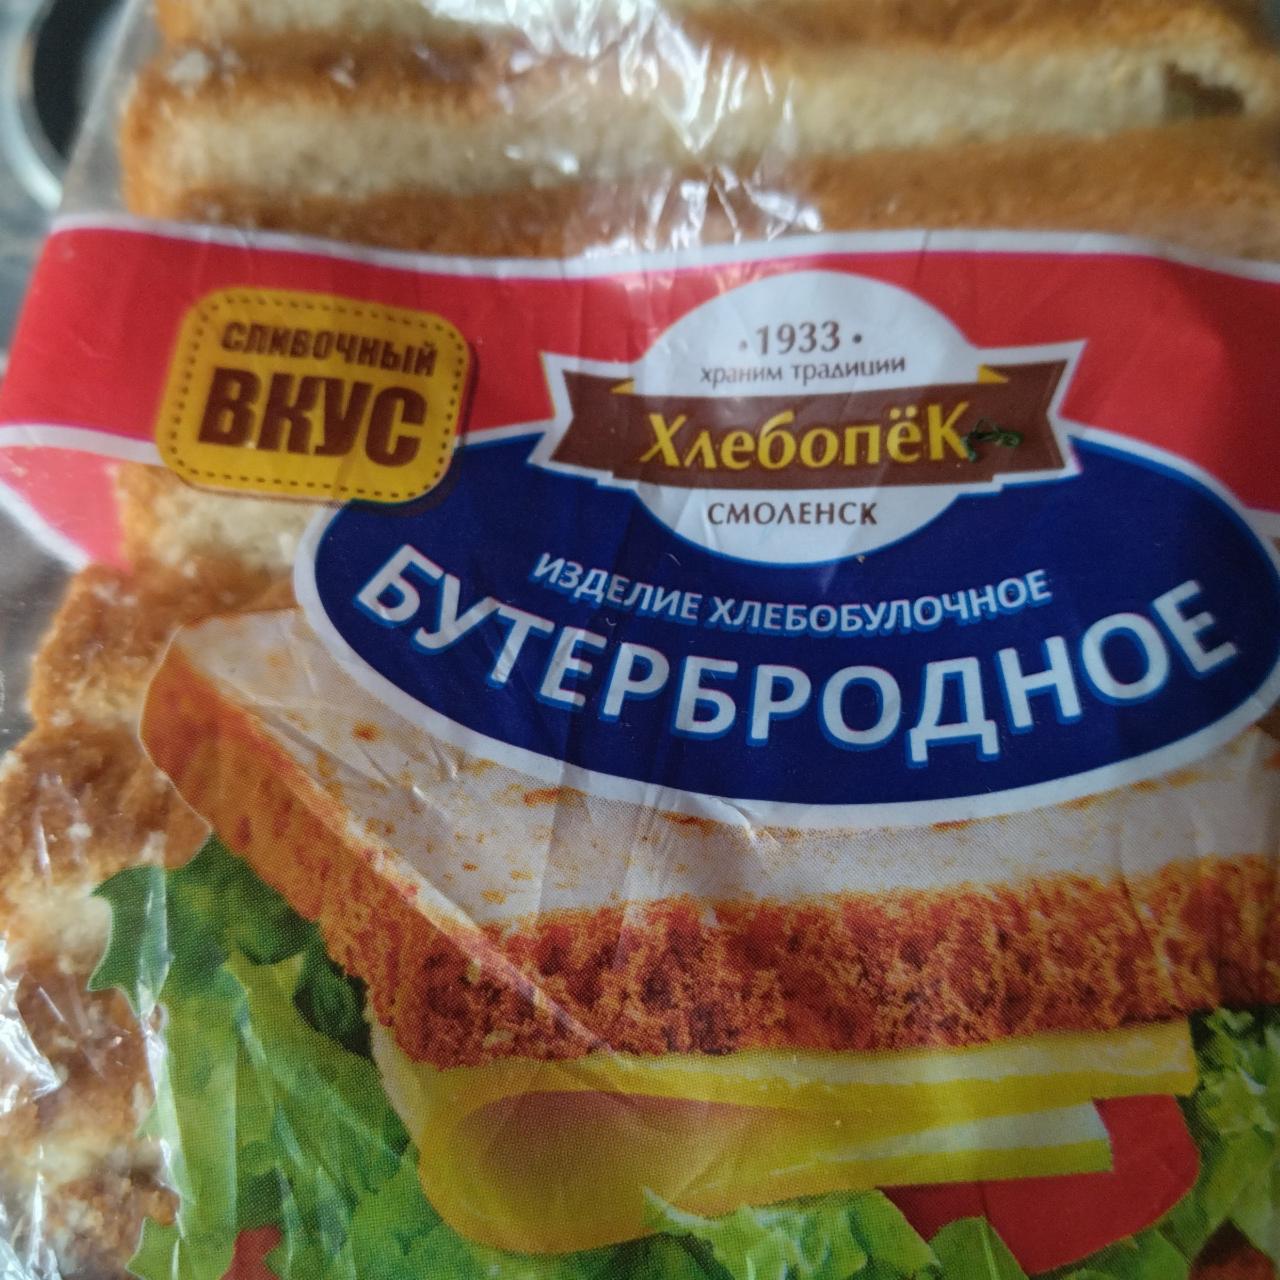 Фото - Изделие хлебобулочное бутербродное Хлебопек